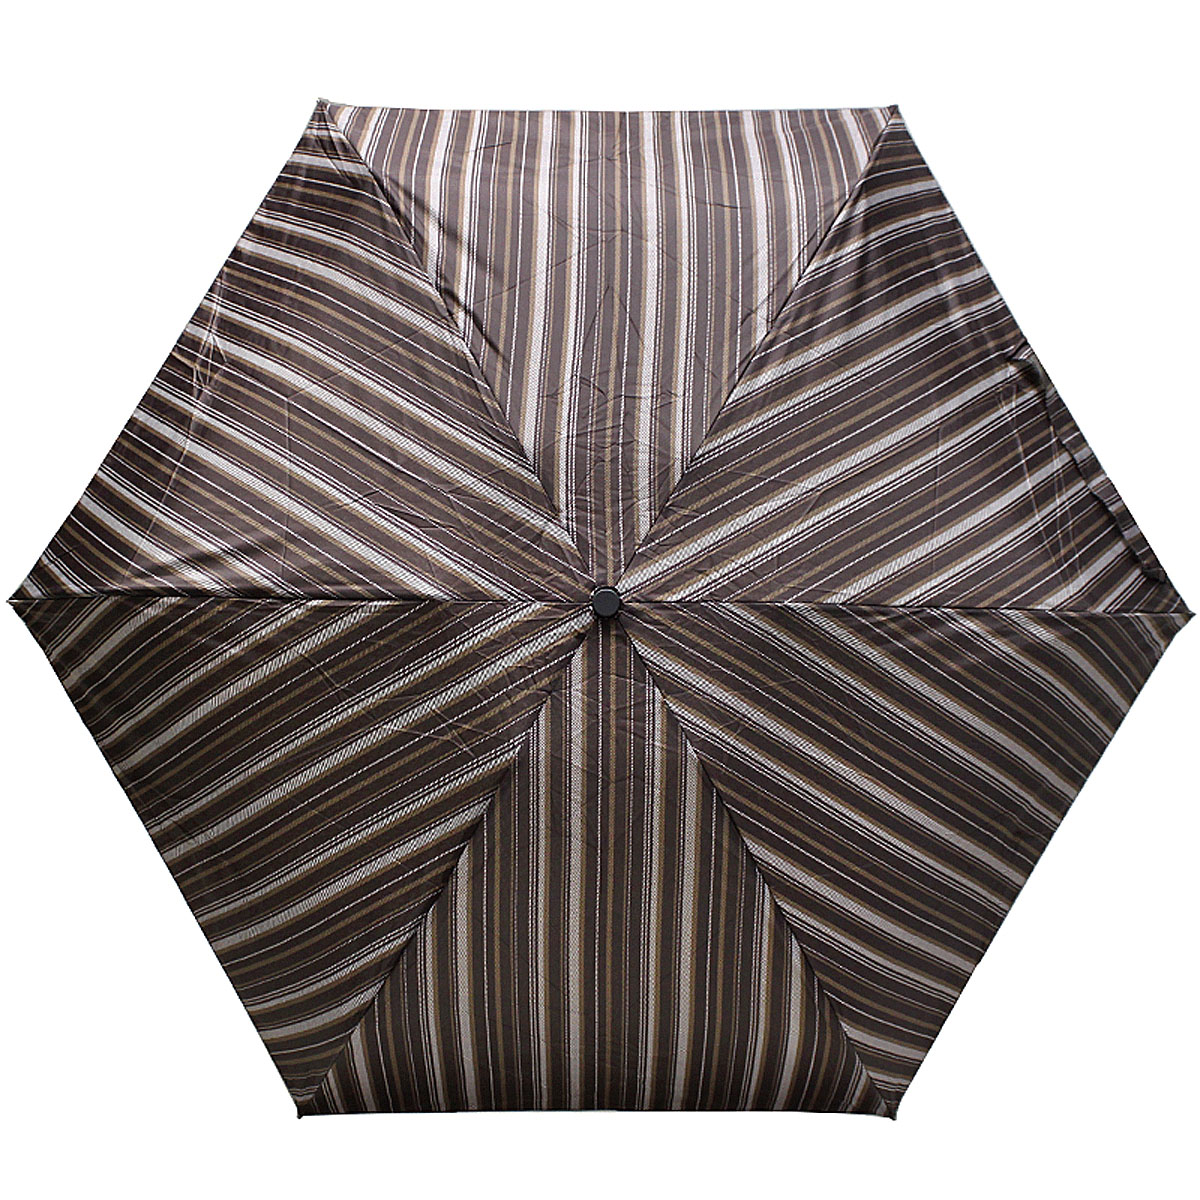 Зонт мужской Vogue, полный автомат, 4 сложения, цвет: коричневая полоска. 723V-4